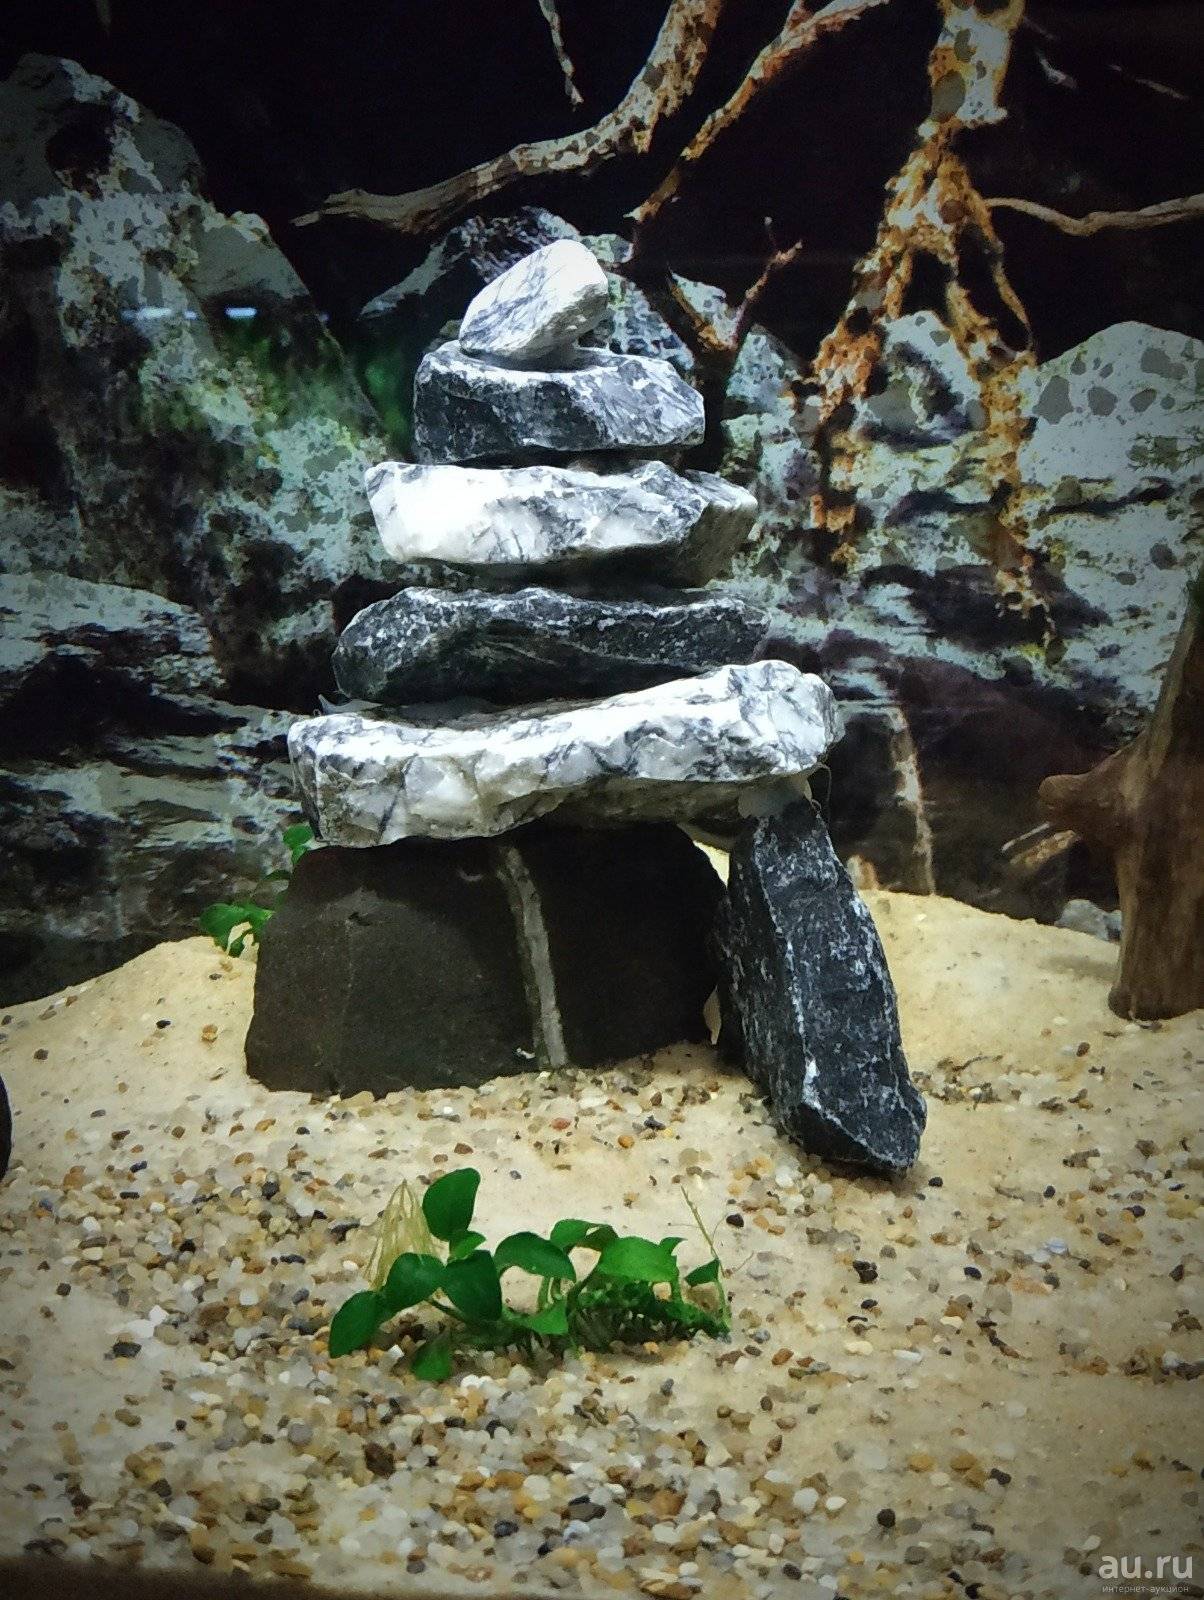 Декорации для аквариума своими руками из камней фото